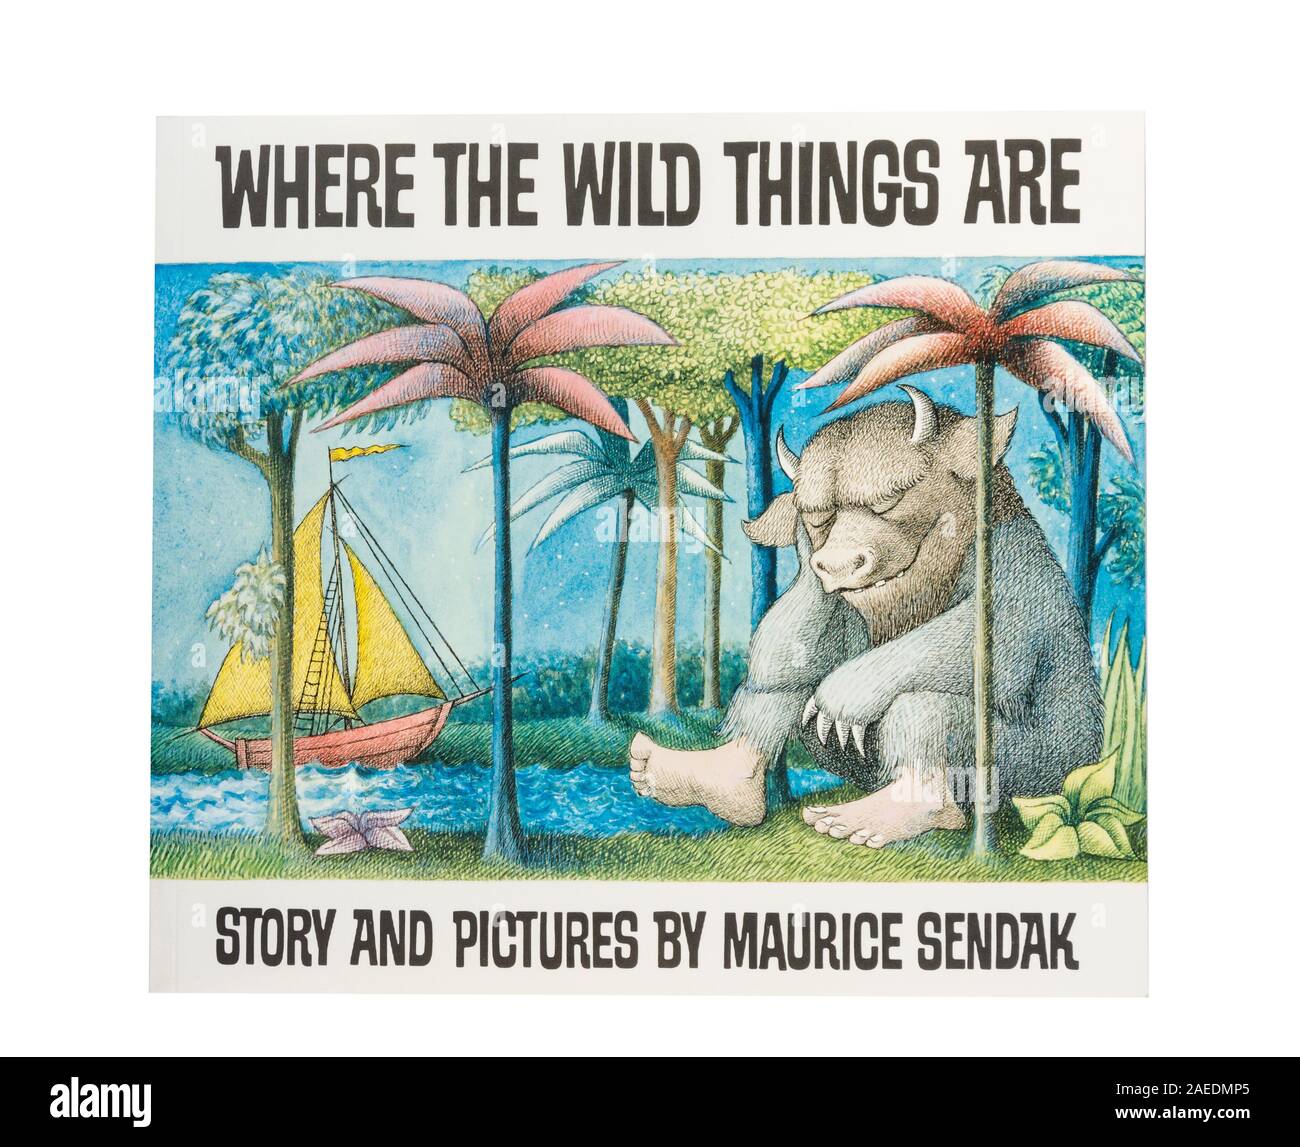 "Dónde están las cosas salvajes" del libro para niños escrito por Maurice Sendak, Greater London, England, Reino Unido Foto de stock